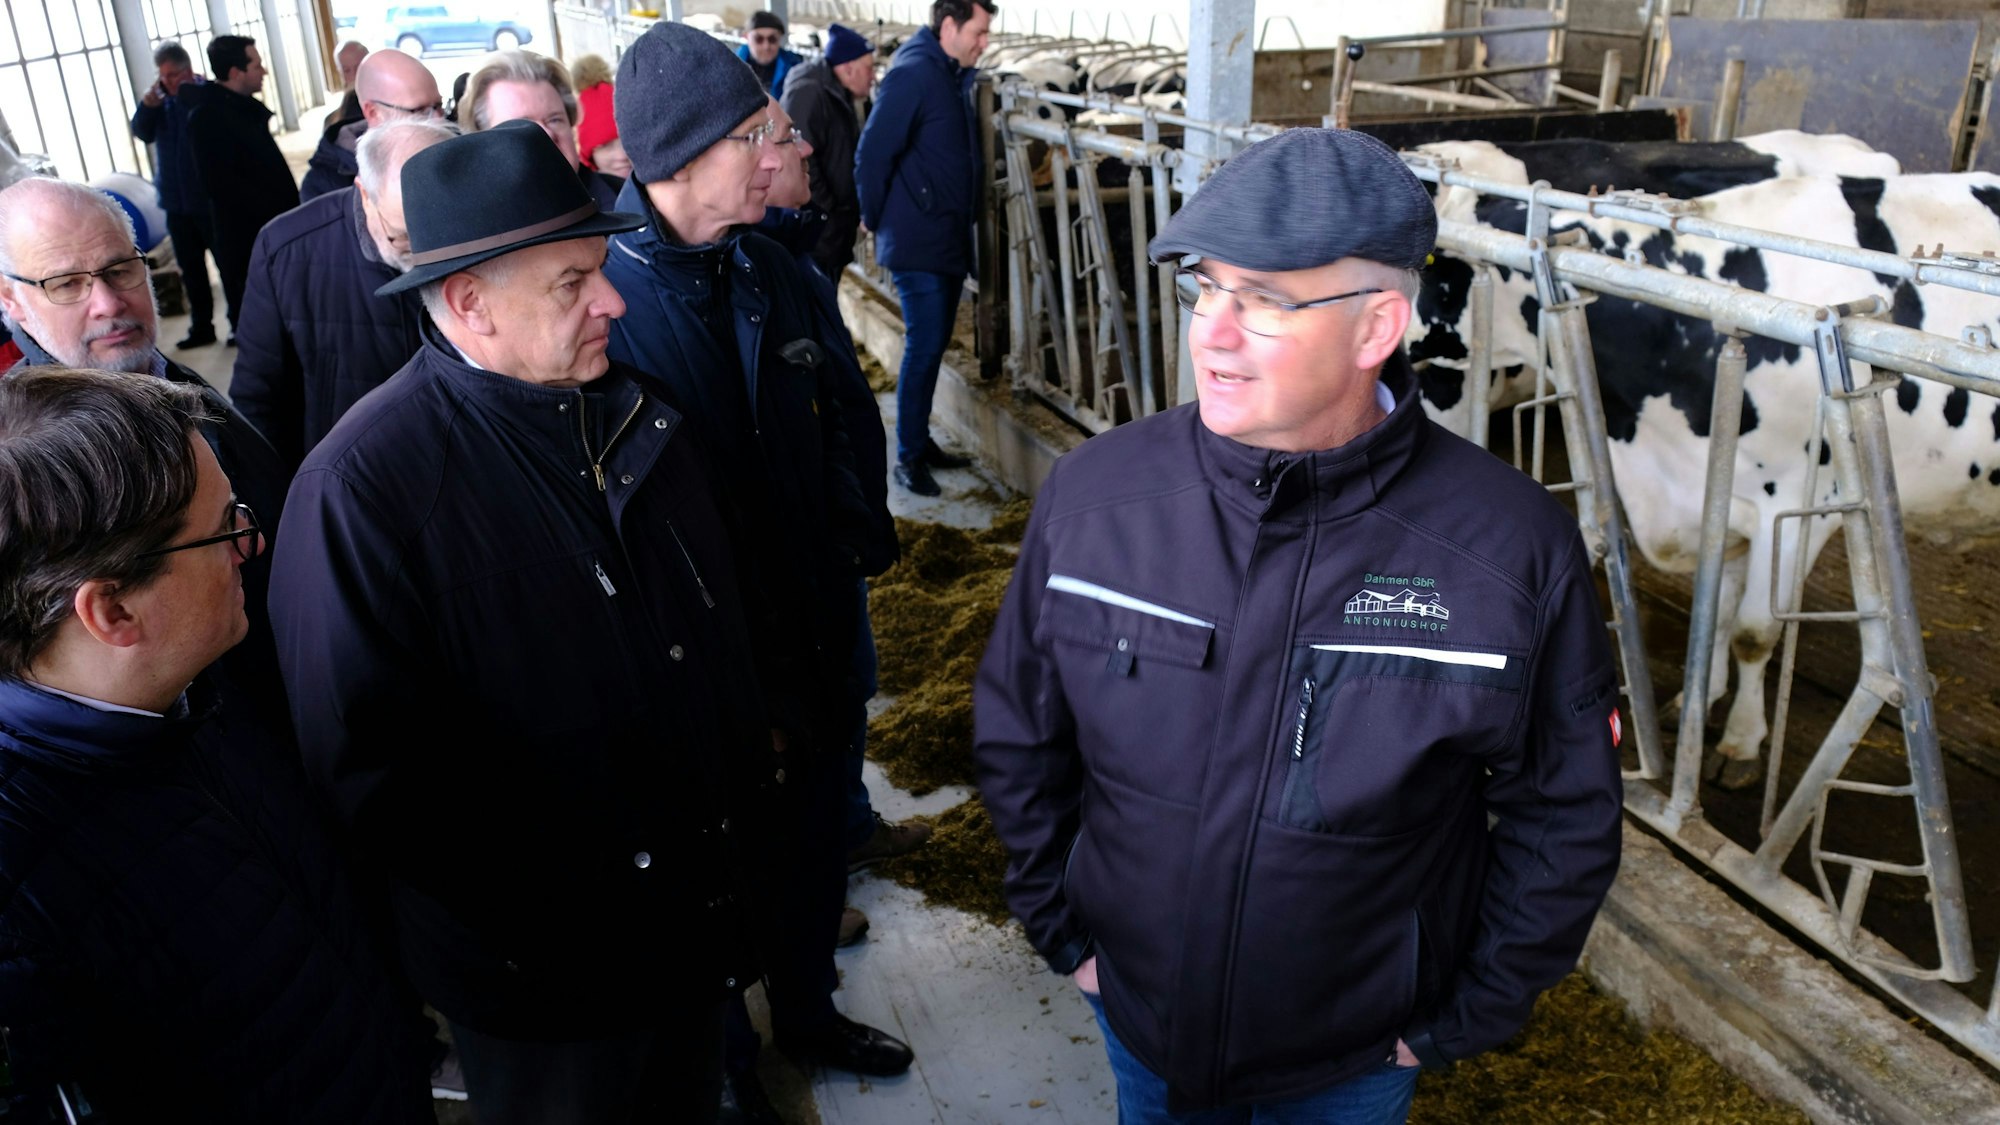 Landwirt Helmut Dahmen (r.) führt eine Besuchergruppe aus CDU-Politikern durch einen seiner Viehställe.